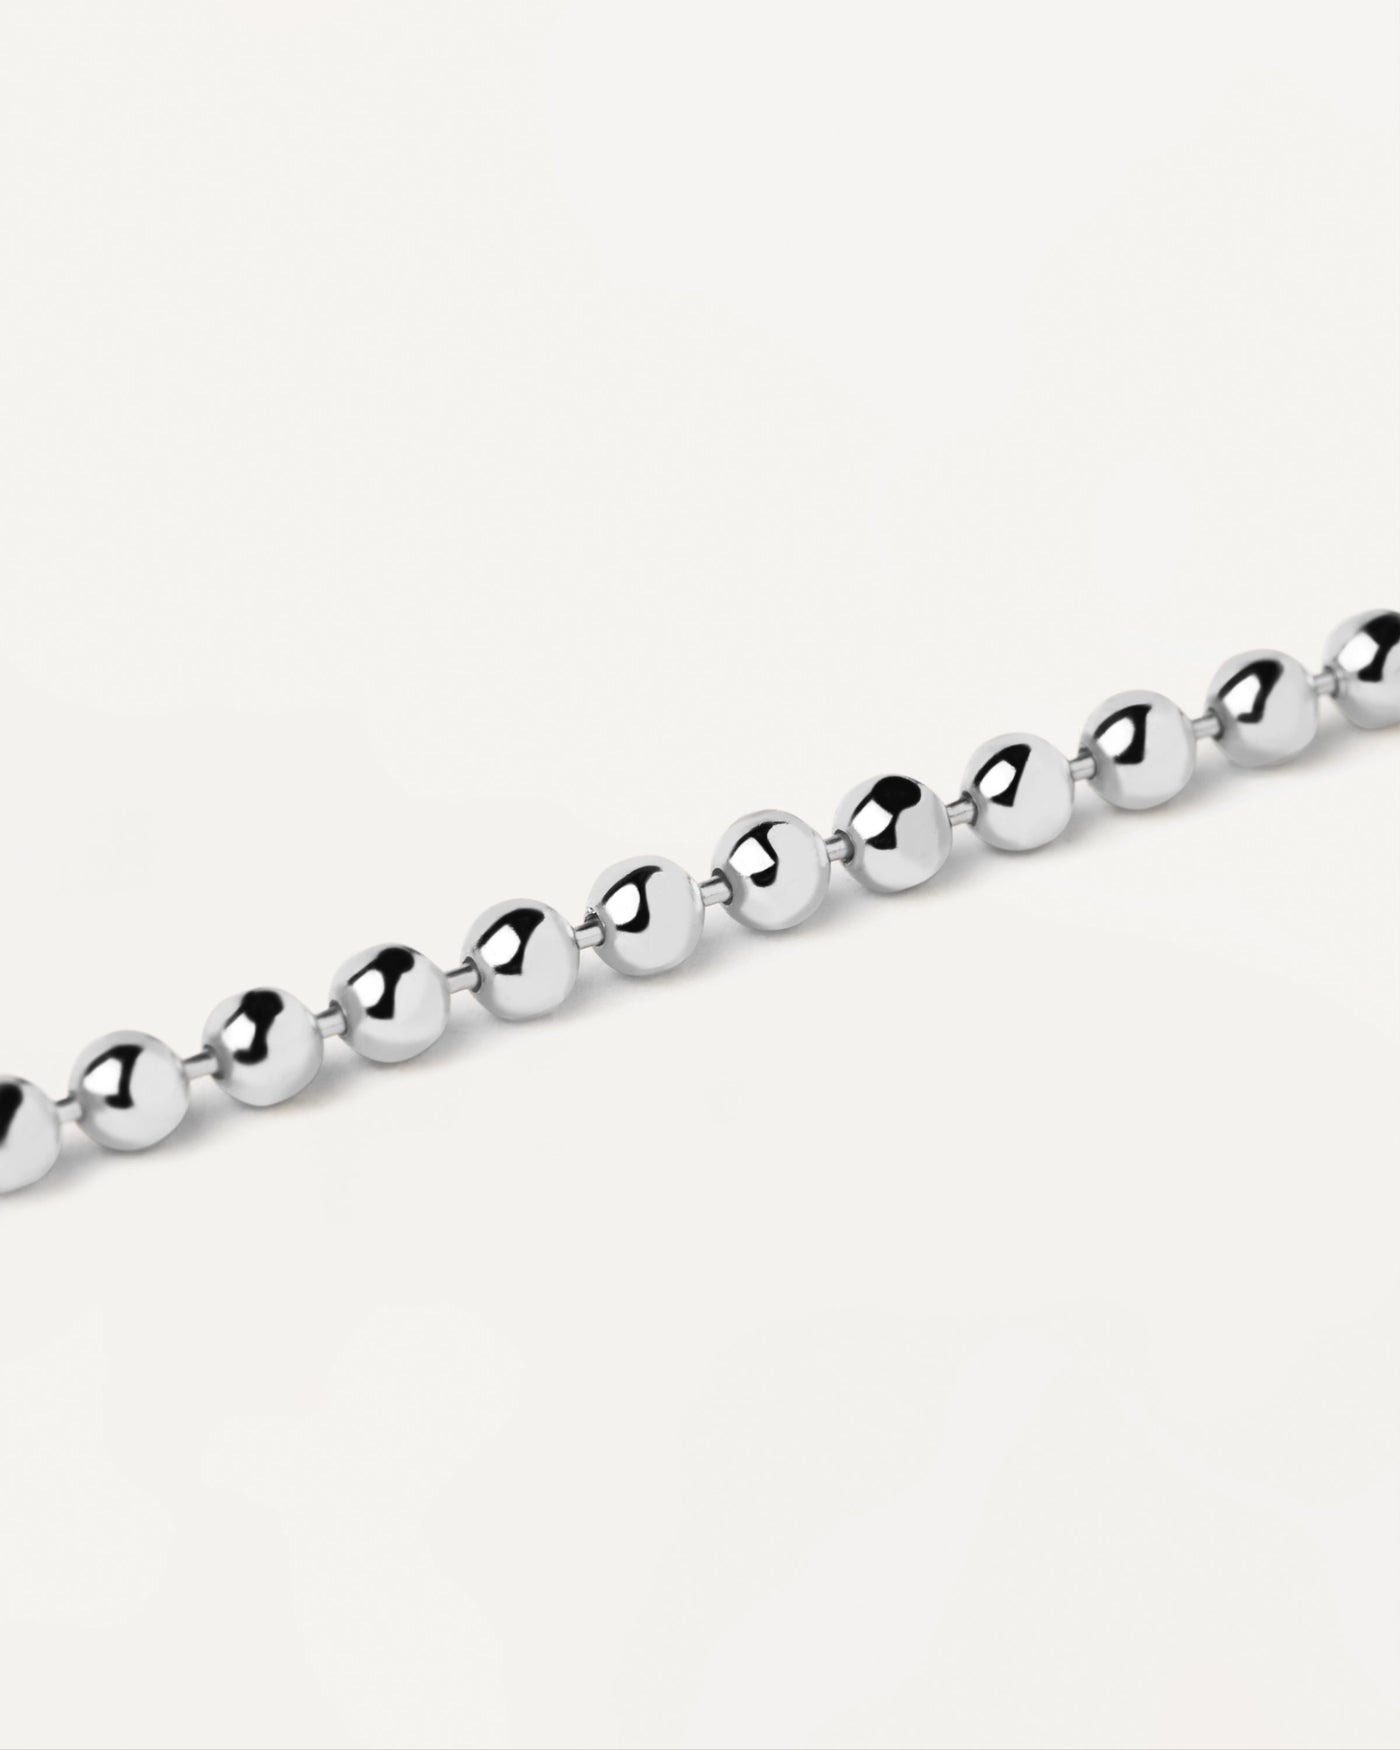 2 Colors 925 Sterling Silver 4MM-6MM Bead Ball Chain Bracelet for Women  Girls | eBay